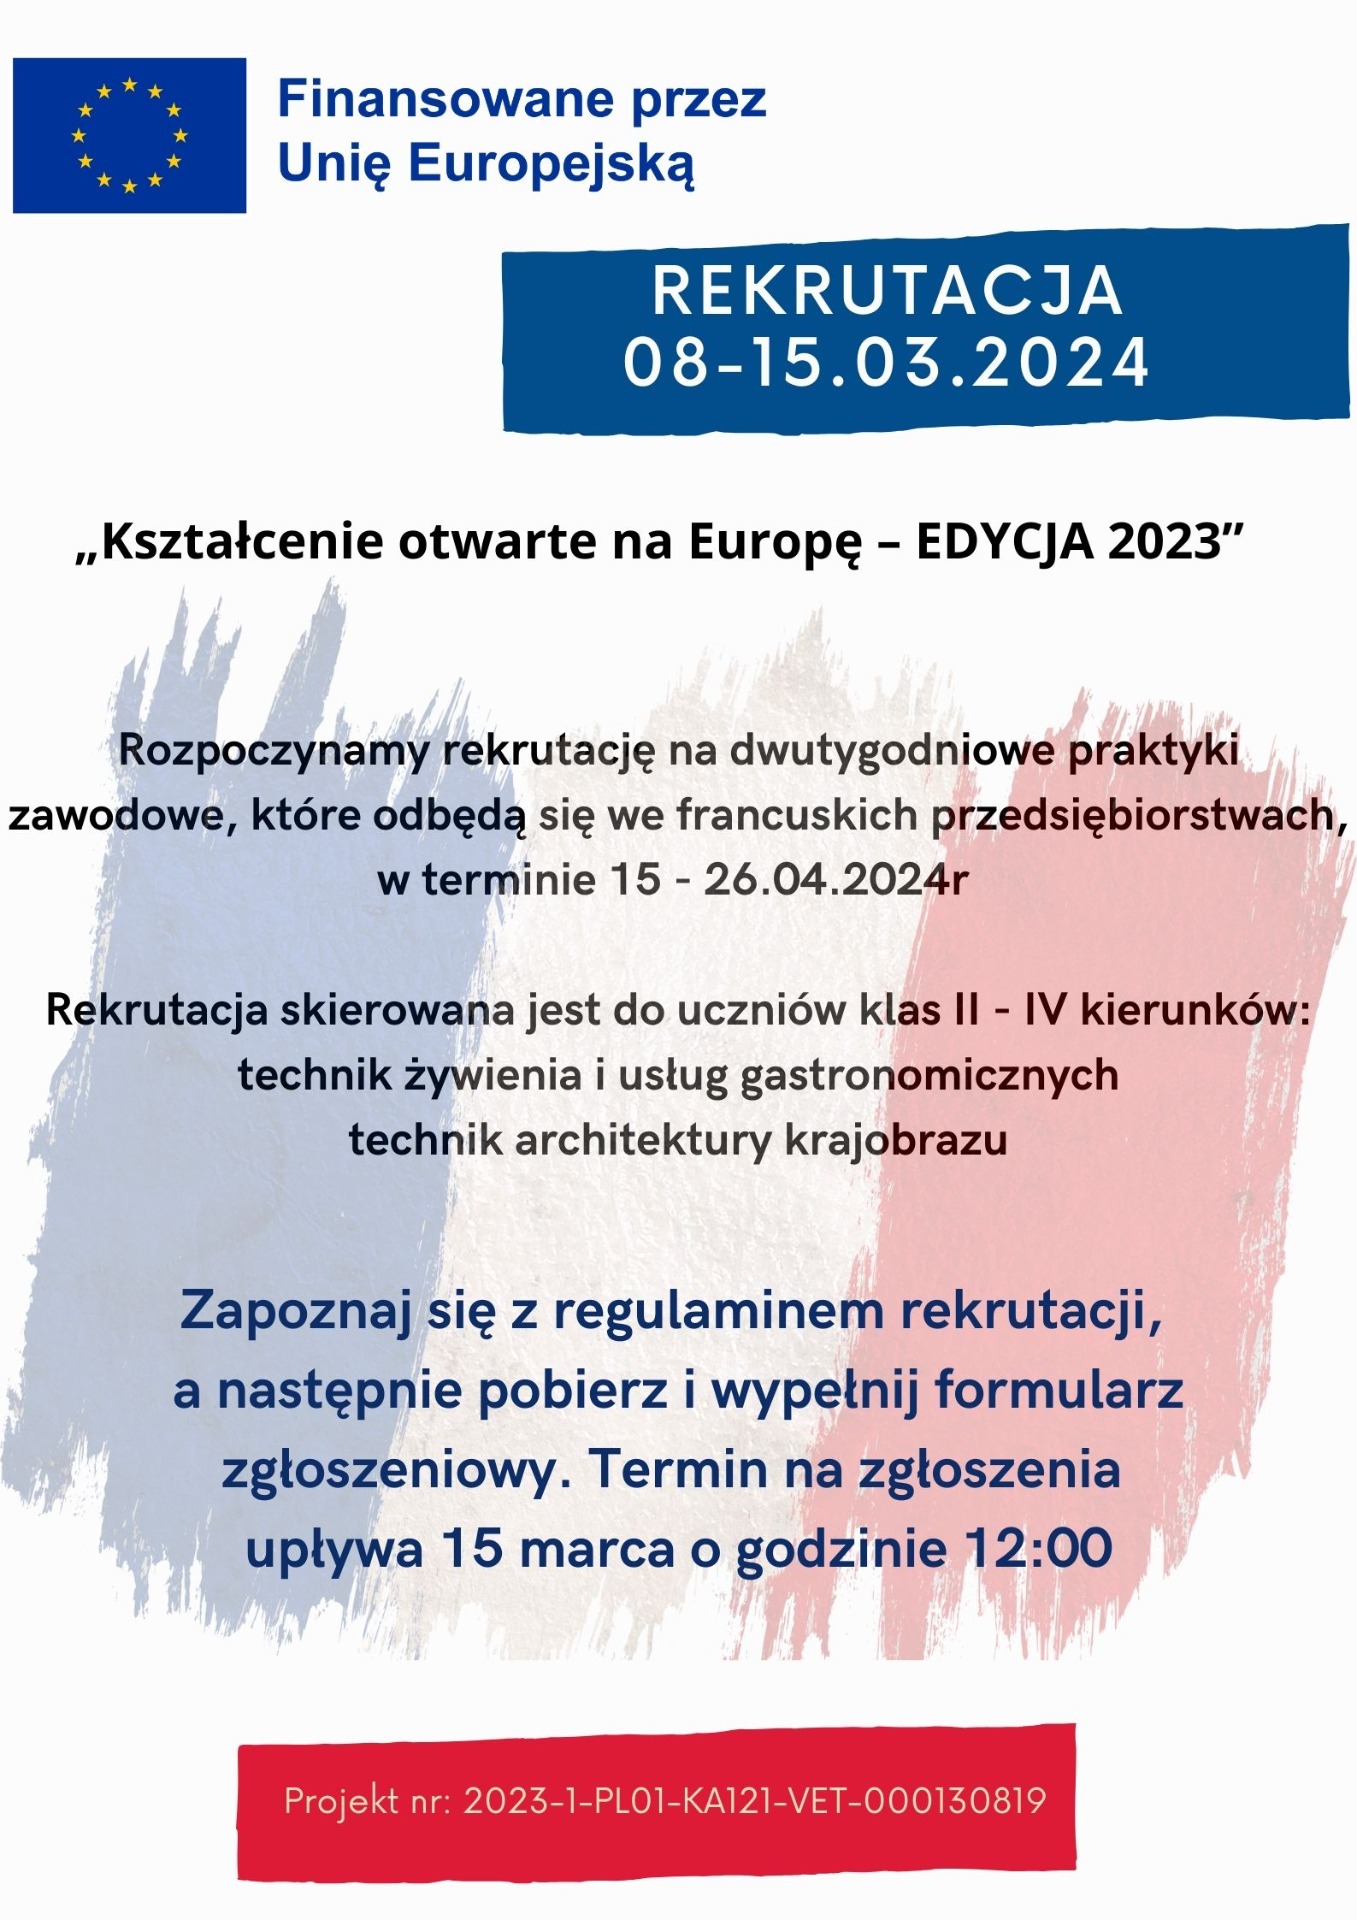 Rusza rekrutacja do projektu "Kształcenie otwarte na Europę - EDYCJA 2023" - Obrazek 1